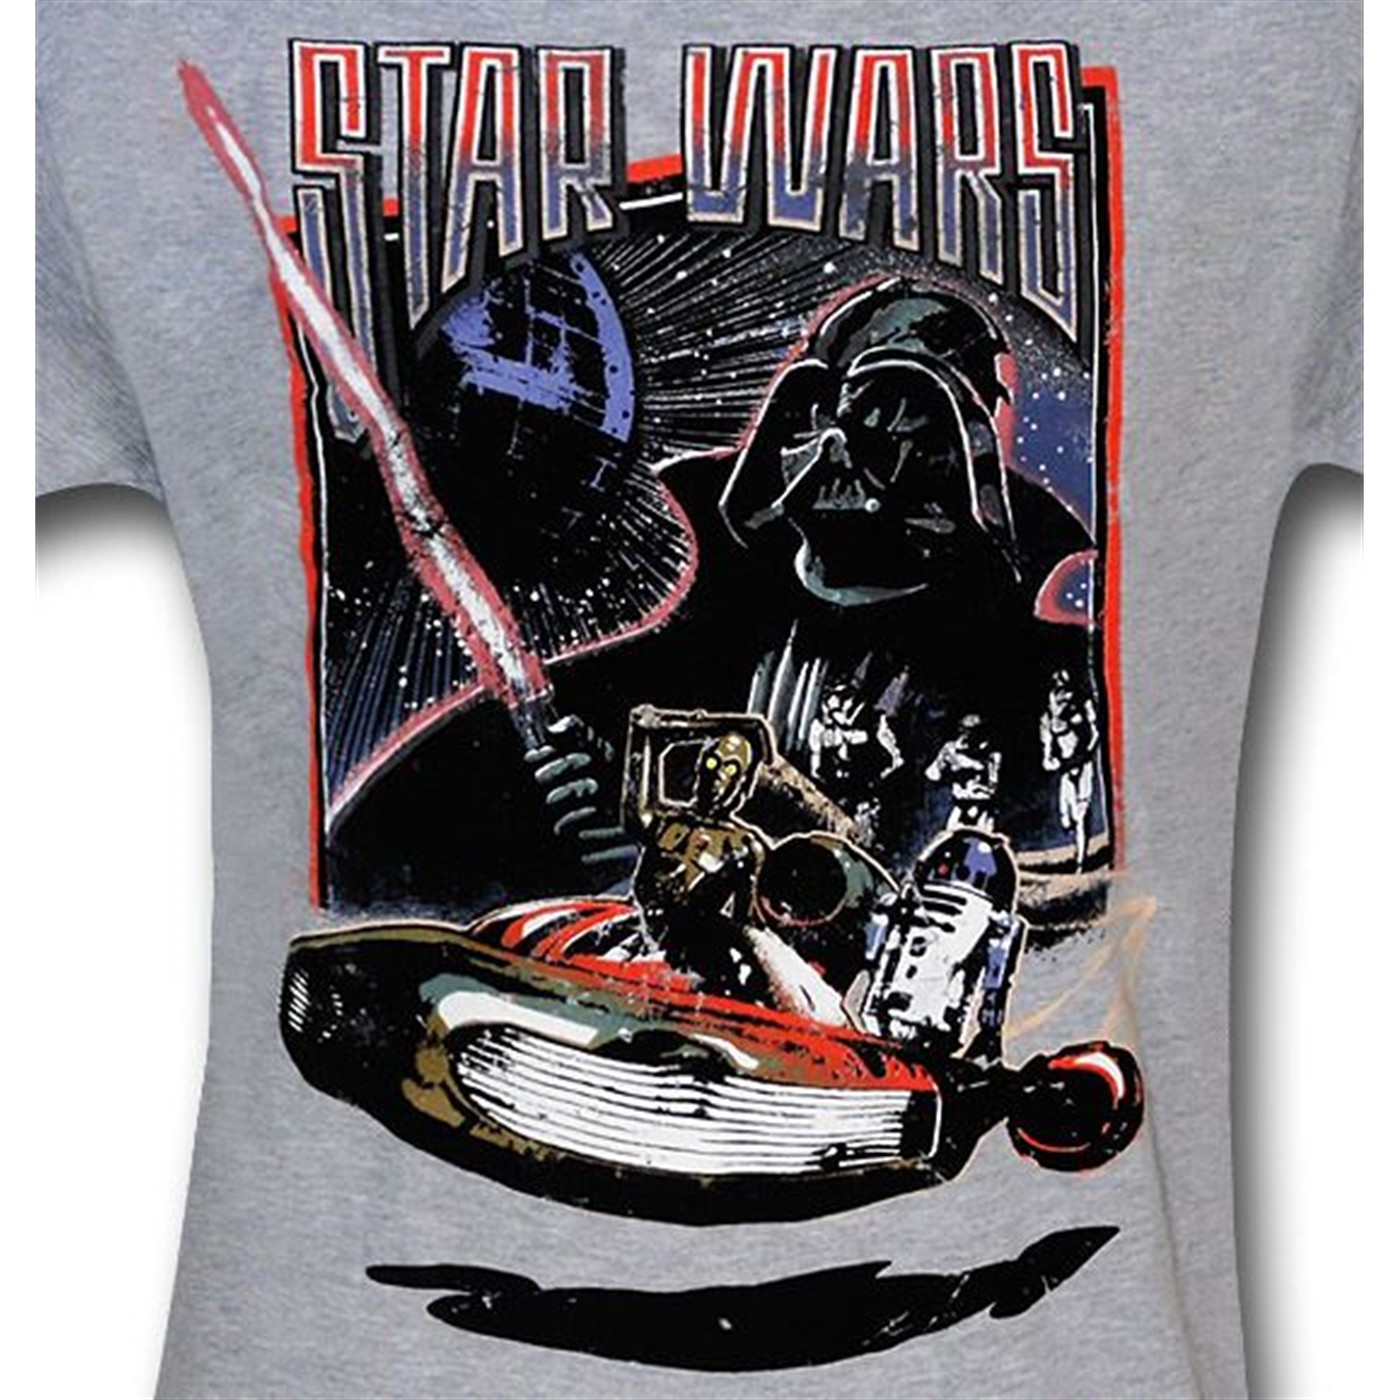 Star Wars Landspeeder Droids T-Shirt